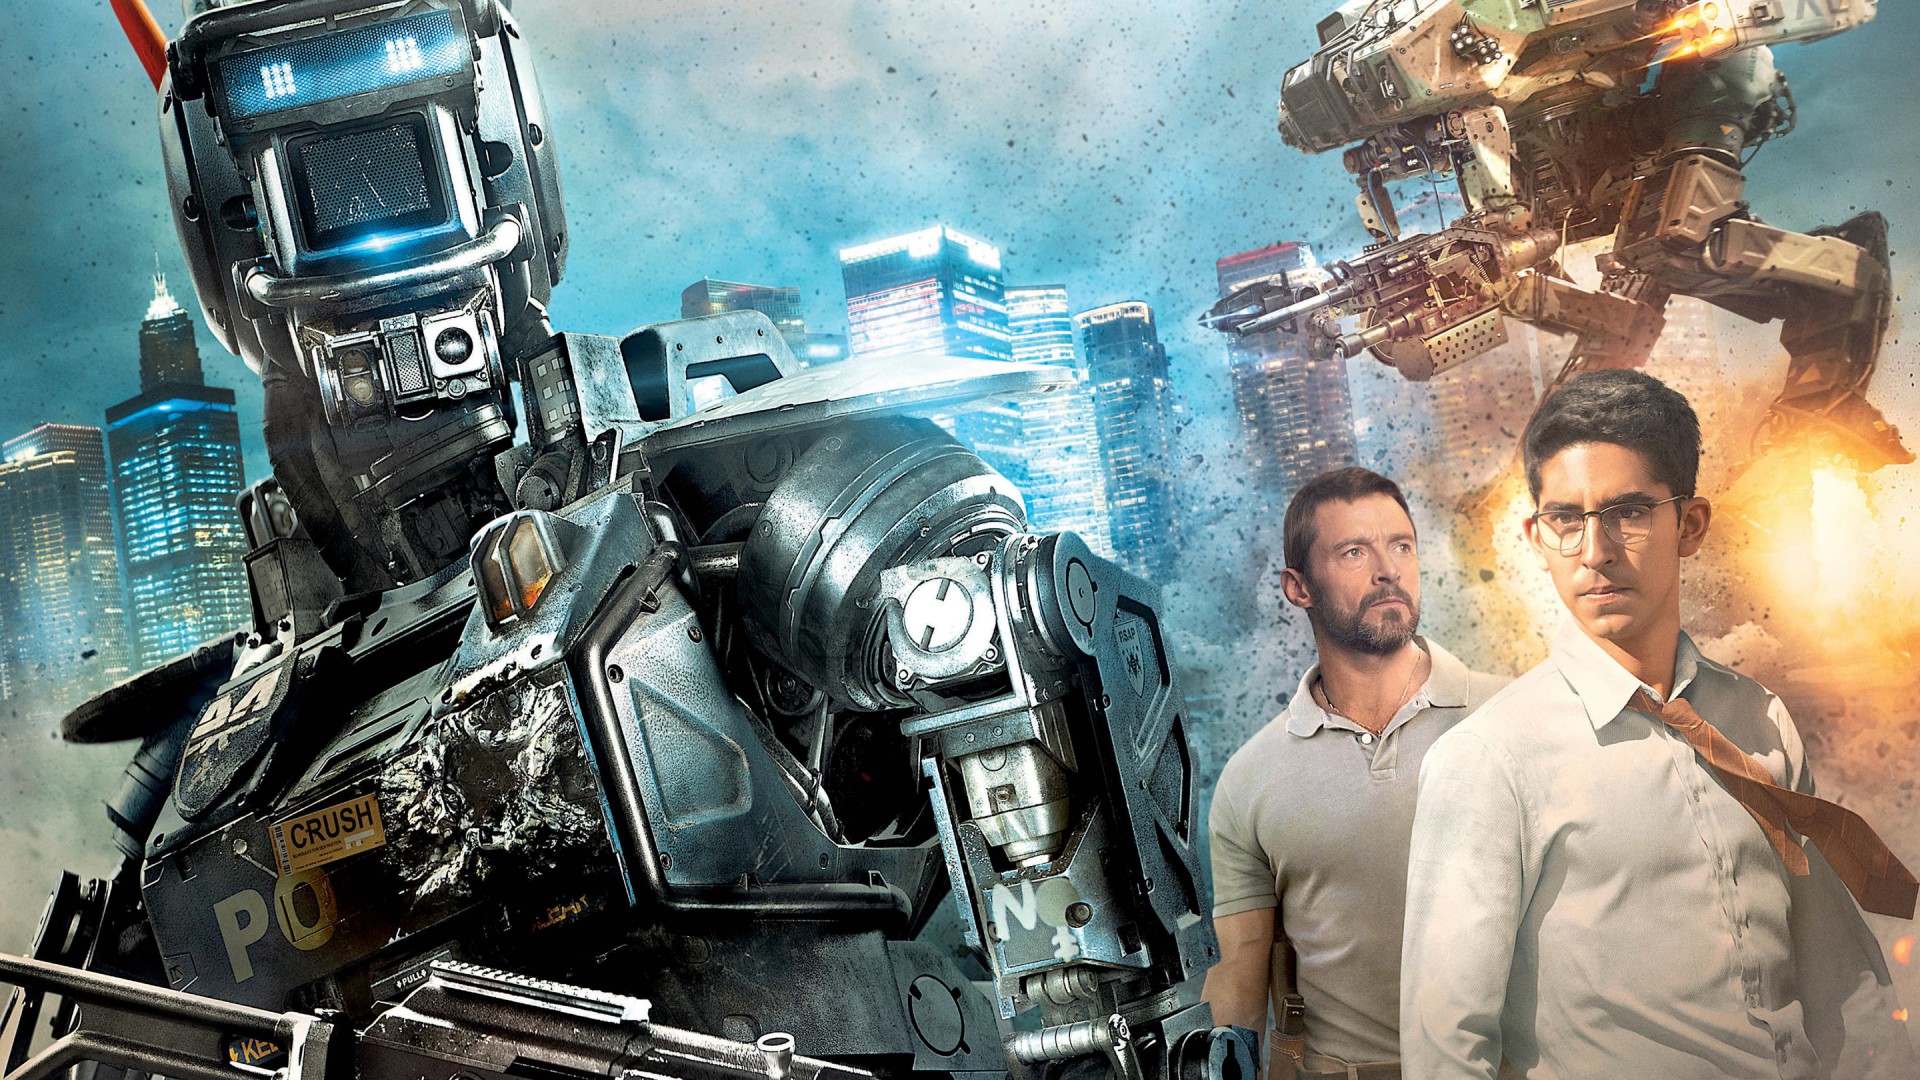 Робот по имени Чаппи, кино, фильм, робот, Хью Джекман, Chappie, Best Movies of 2015, Hugh Jackman, Dev Patel, poster, wallpaper, robot, gun (horizontal)